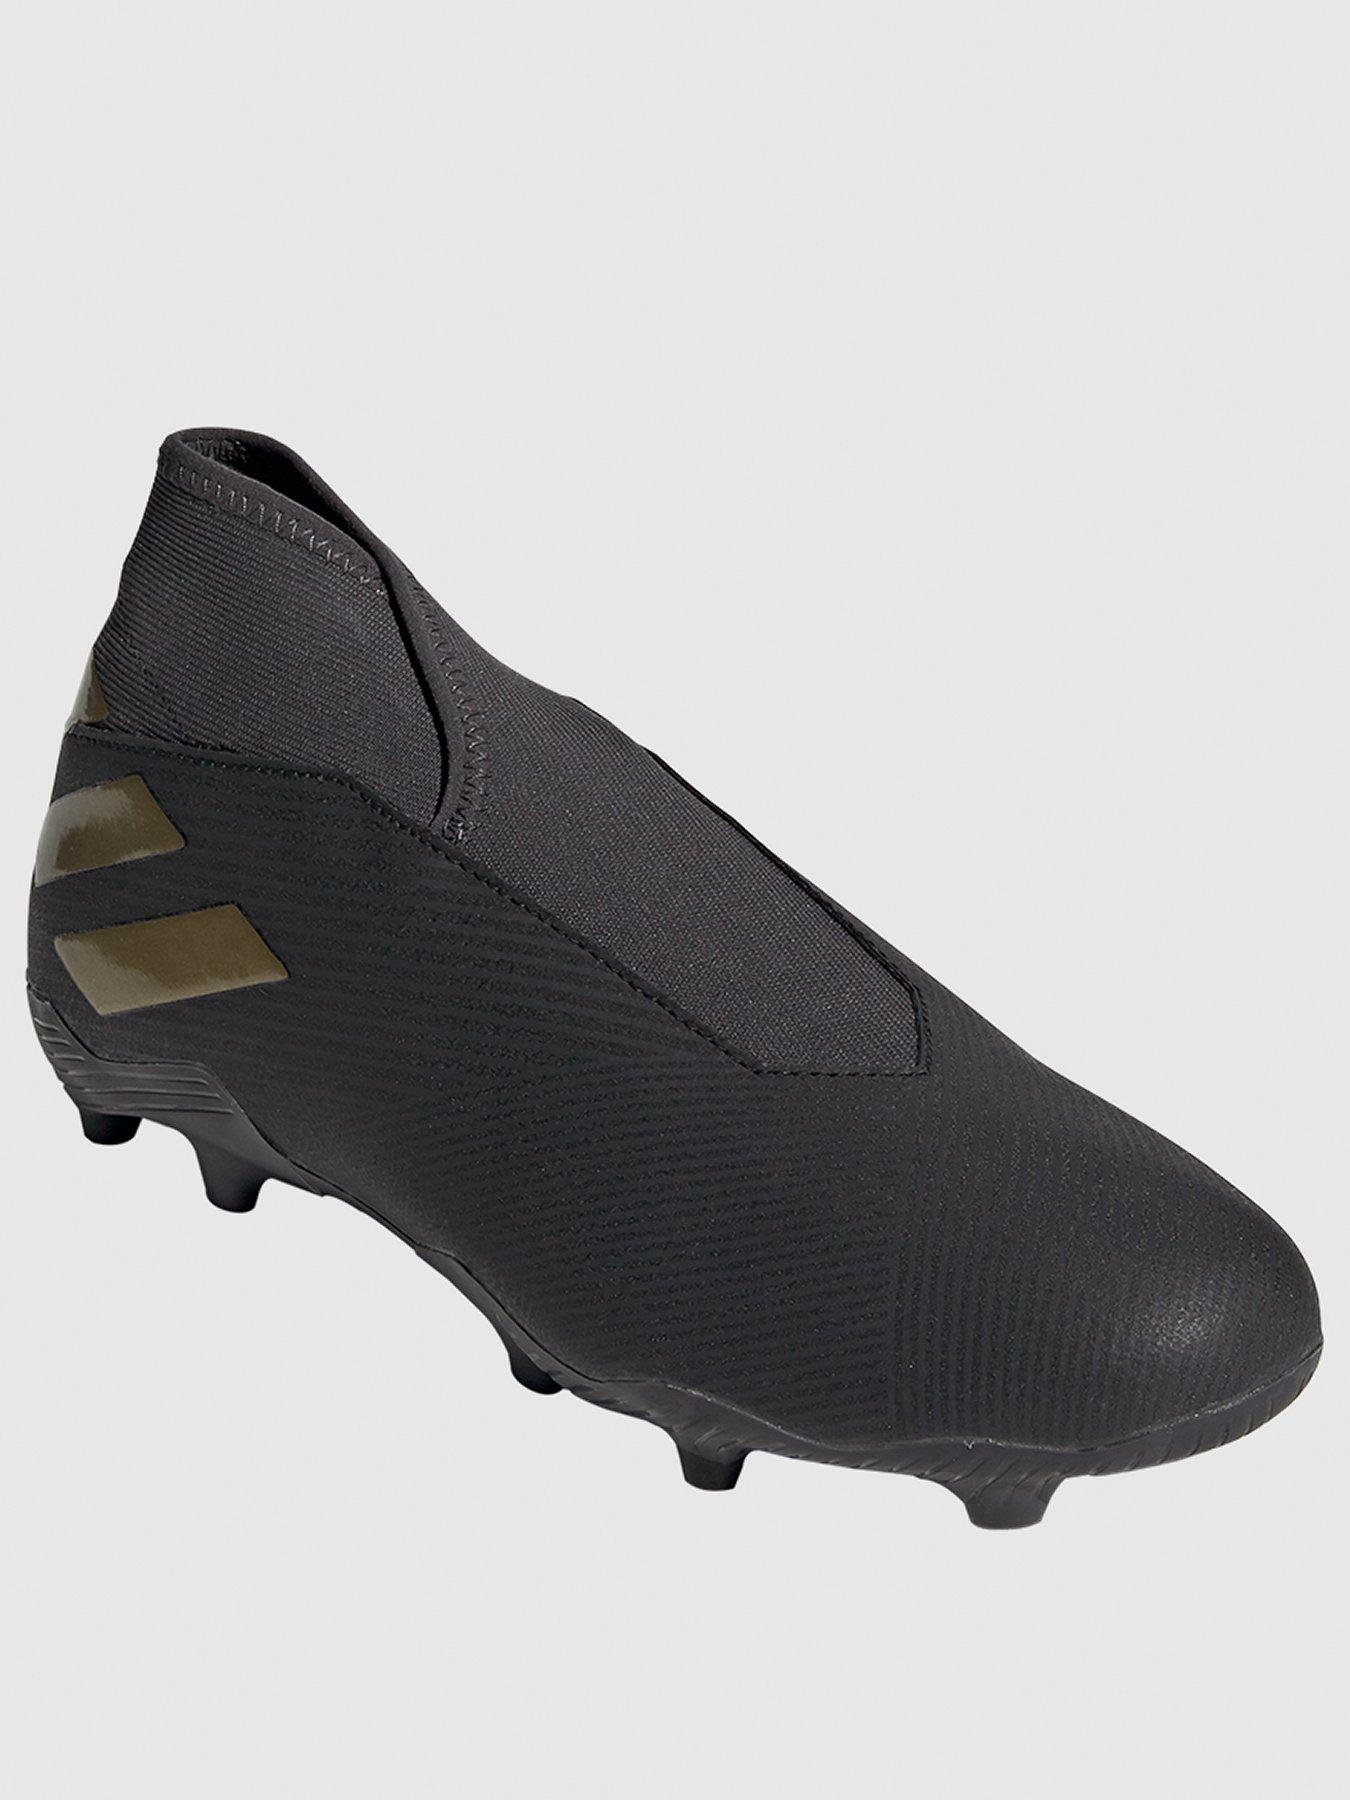 adidas nemeziz football boots